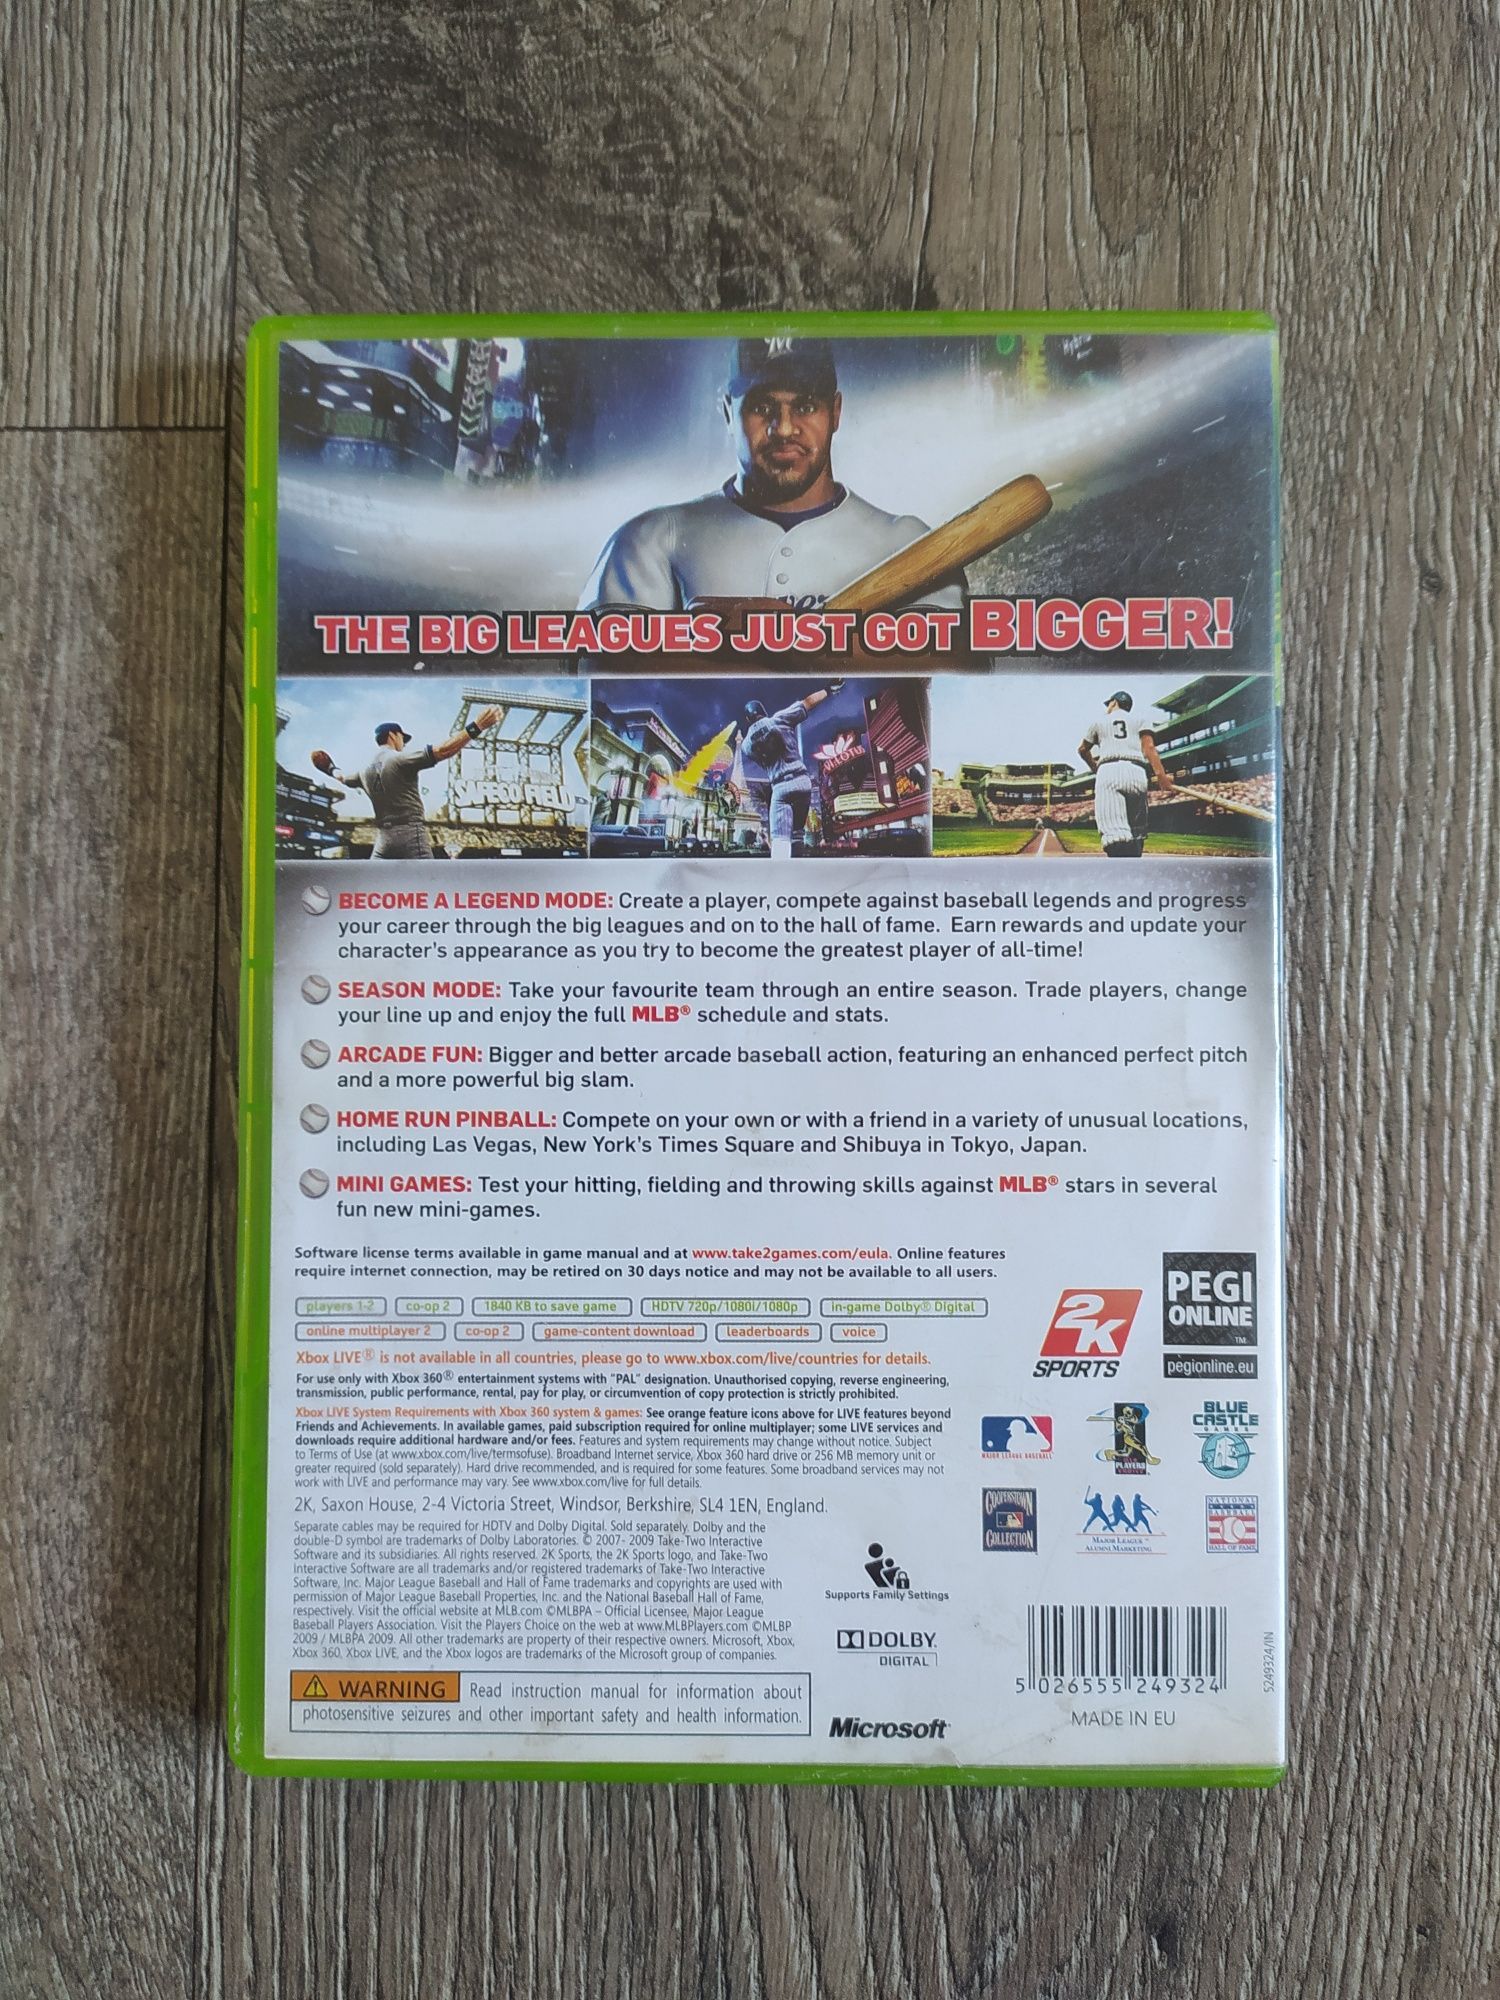 Gra Xbox 360 The Bigs 2 2K Sports Baseball Wysyłka